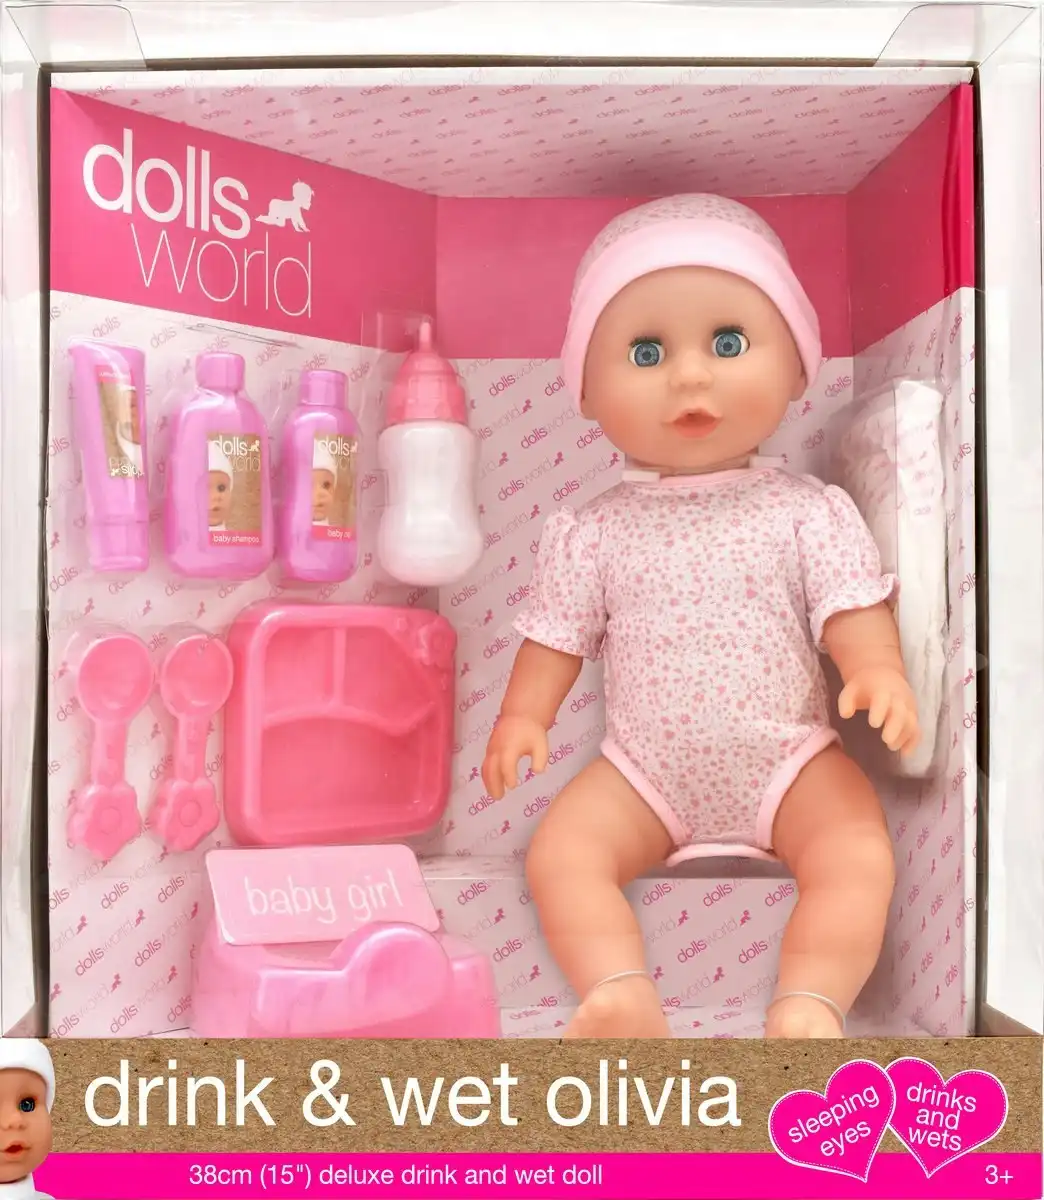 DollsWorld - Drink & Wet Olivia